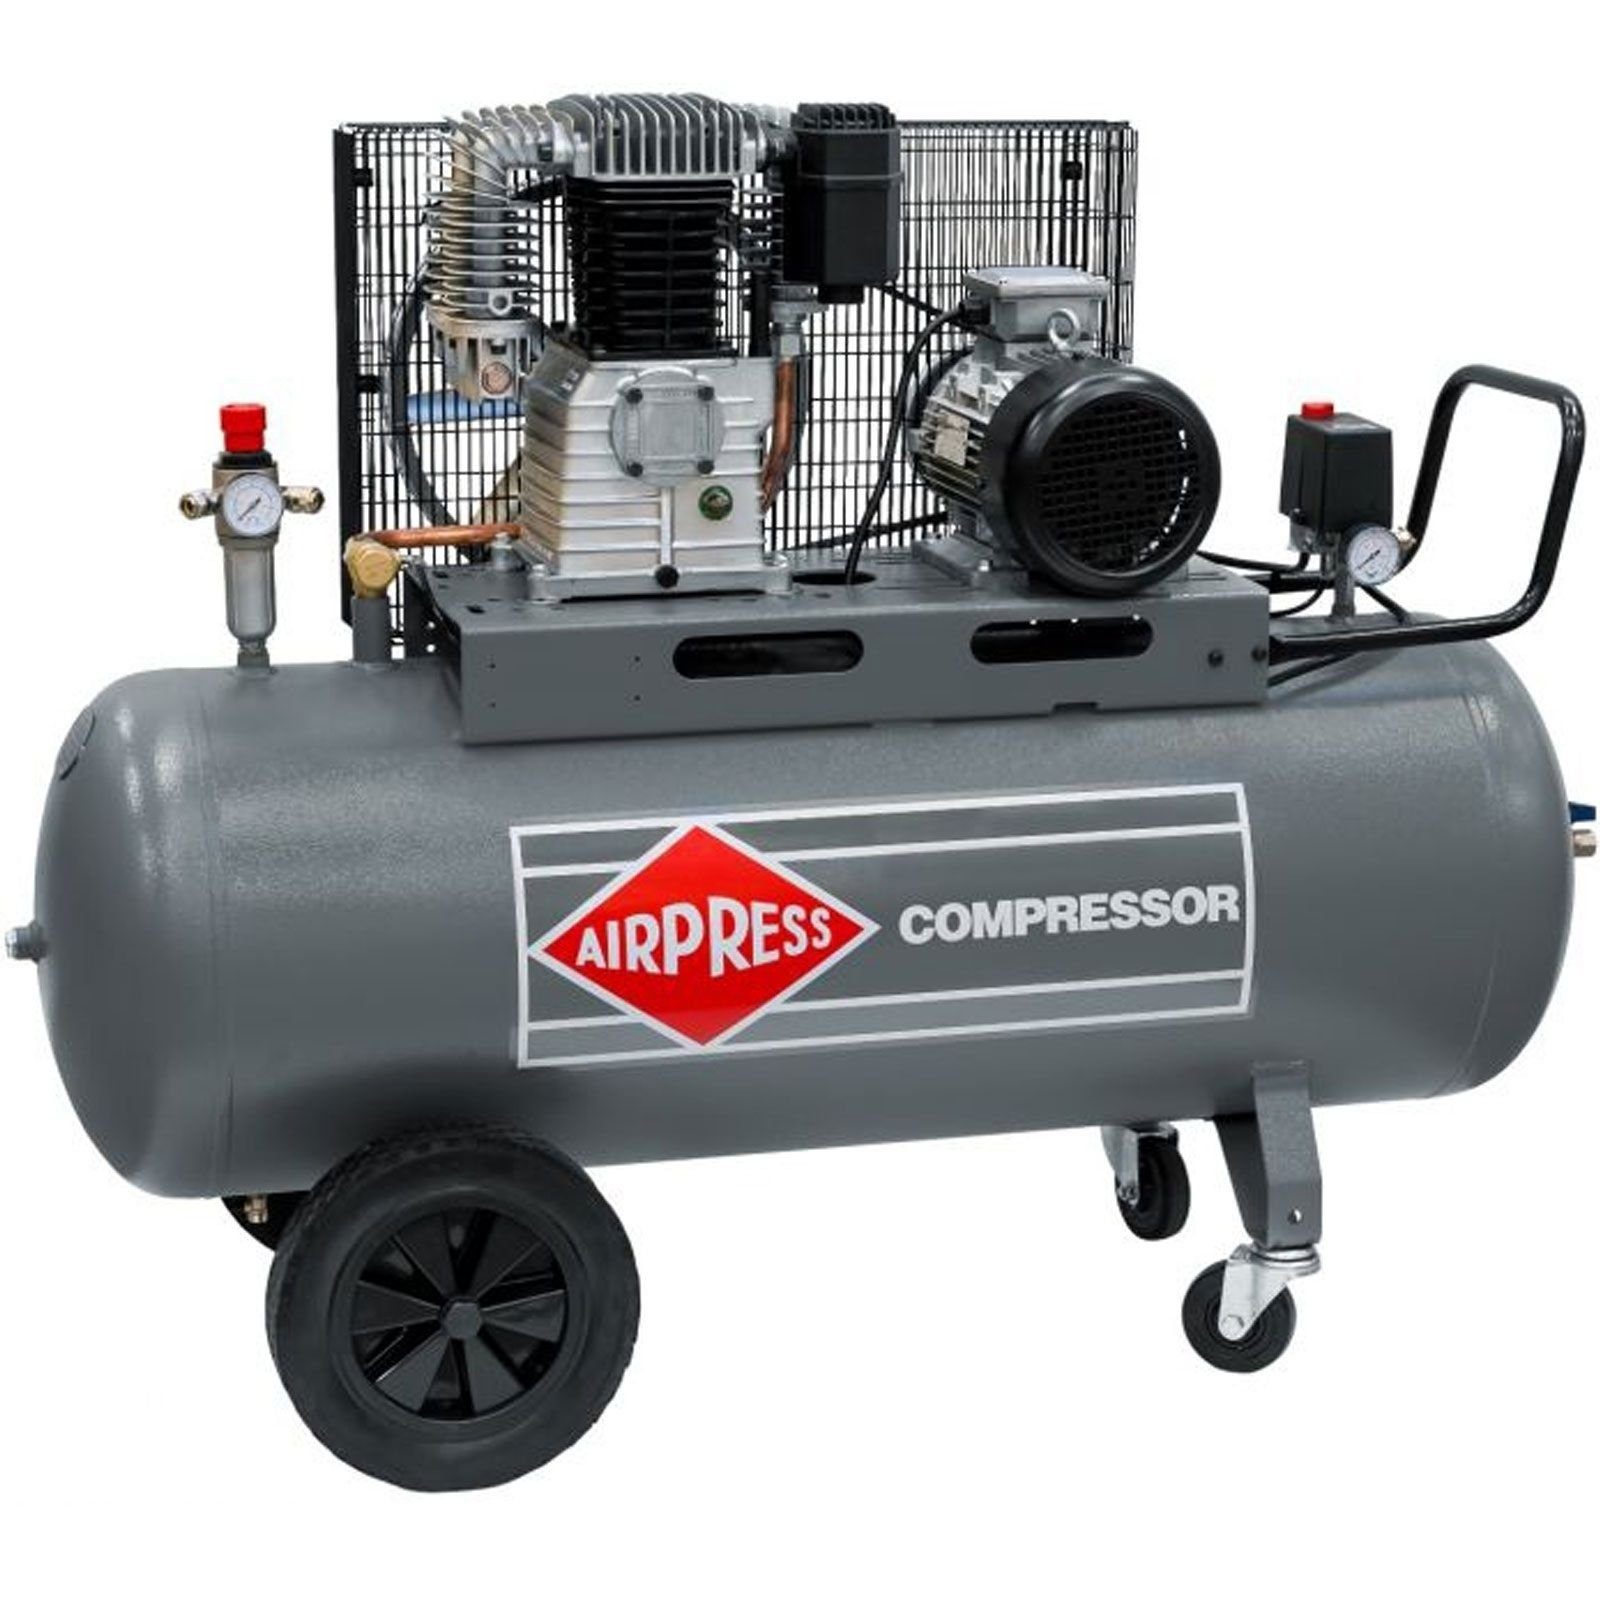 Airpress Kompressor Druckluft- Kompressor 5,5 PS 200 Liter 11 bar HK650-200 Typ 360671, max. 11 bar, 200 l, 1 Stück